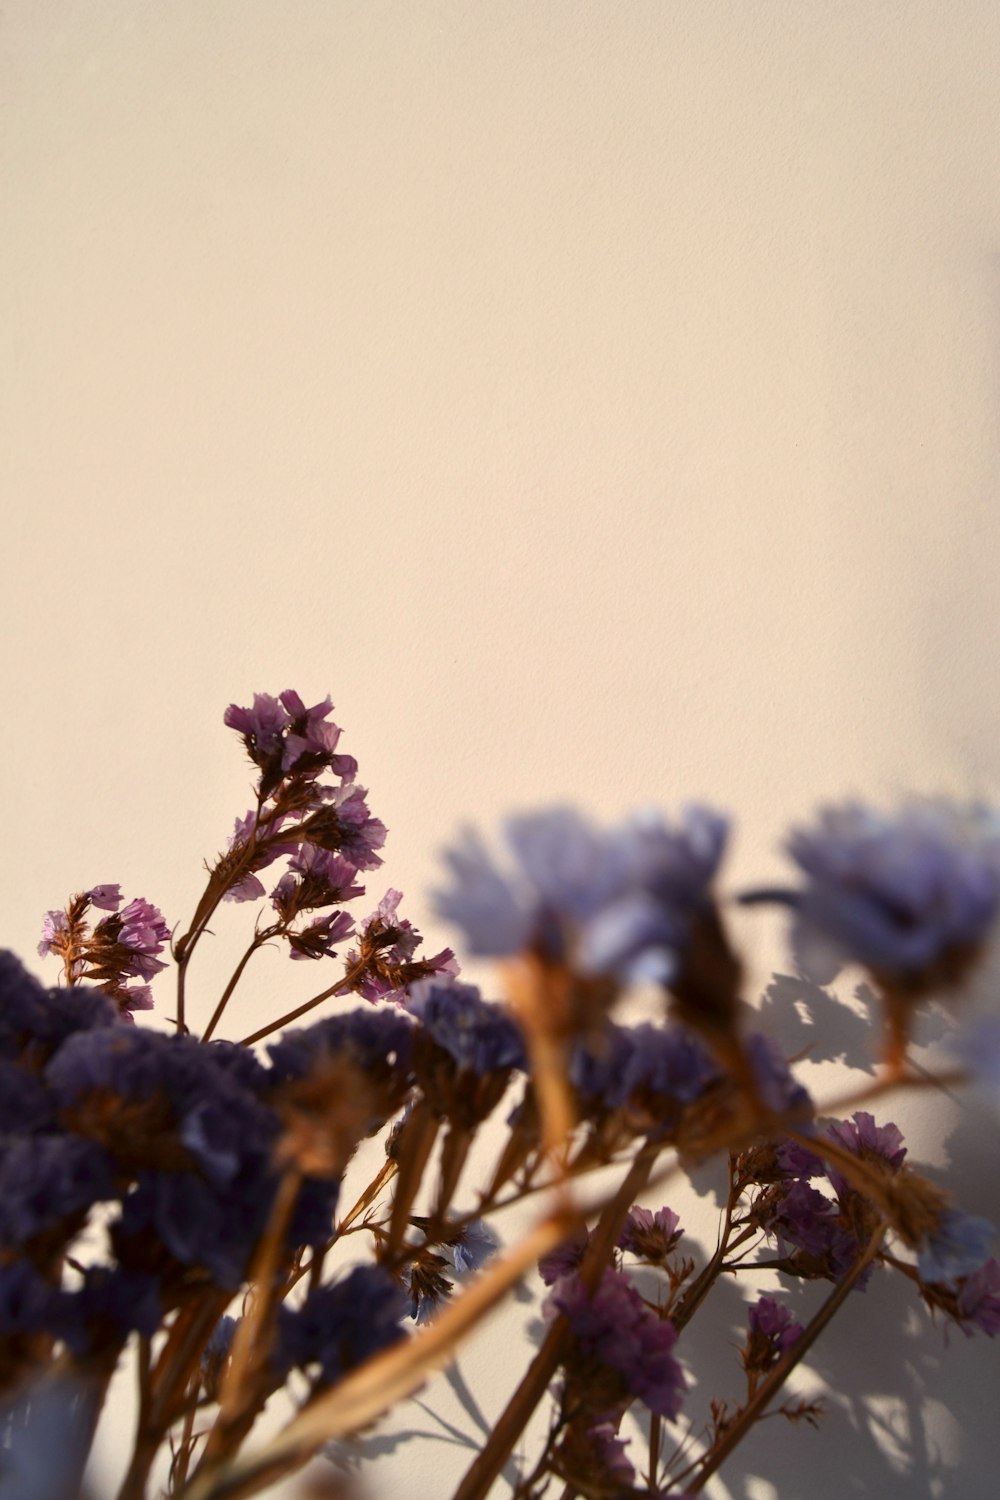 blue flowers in tilt shift lens